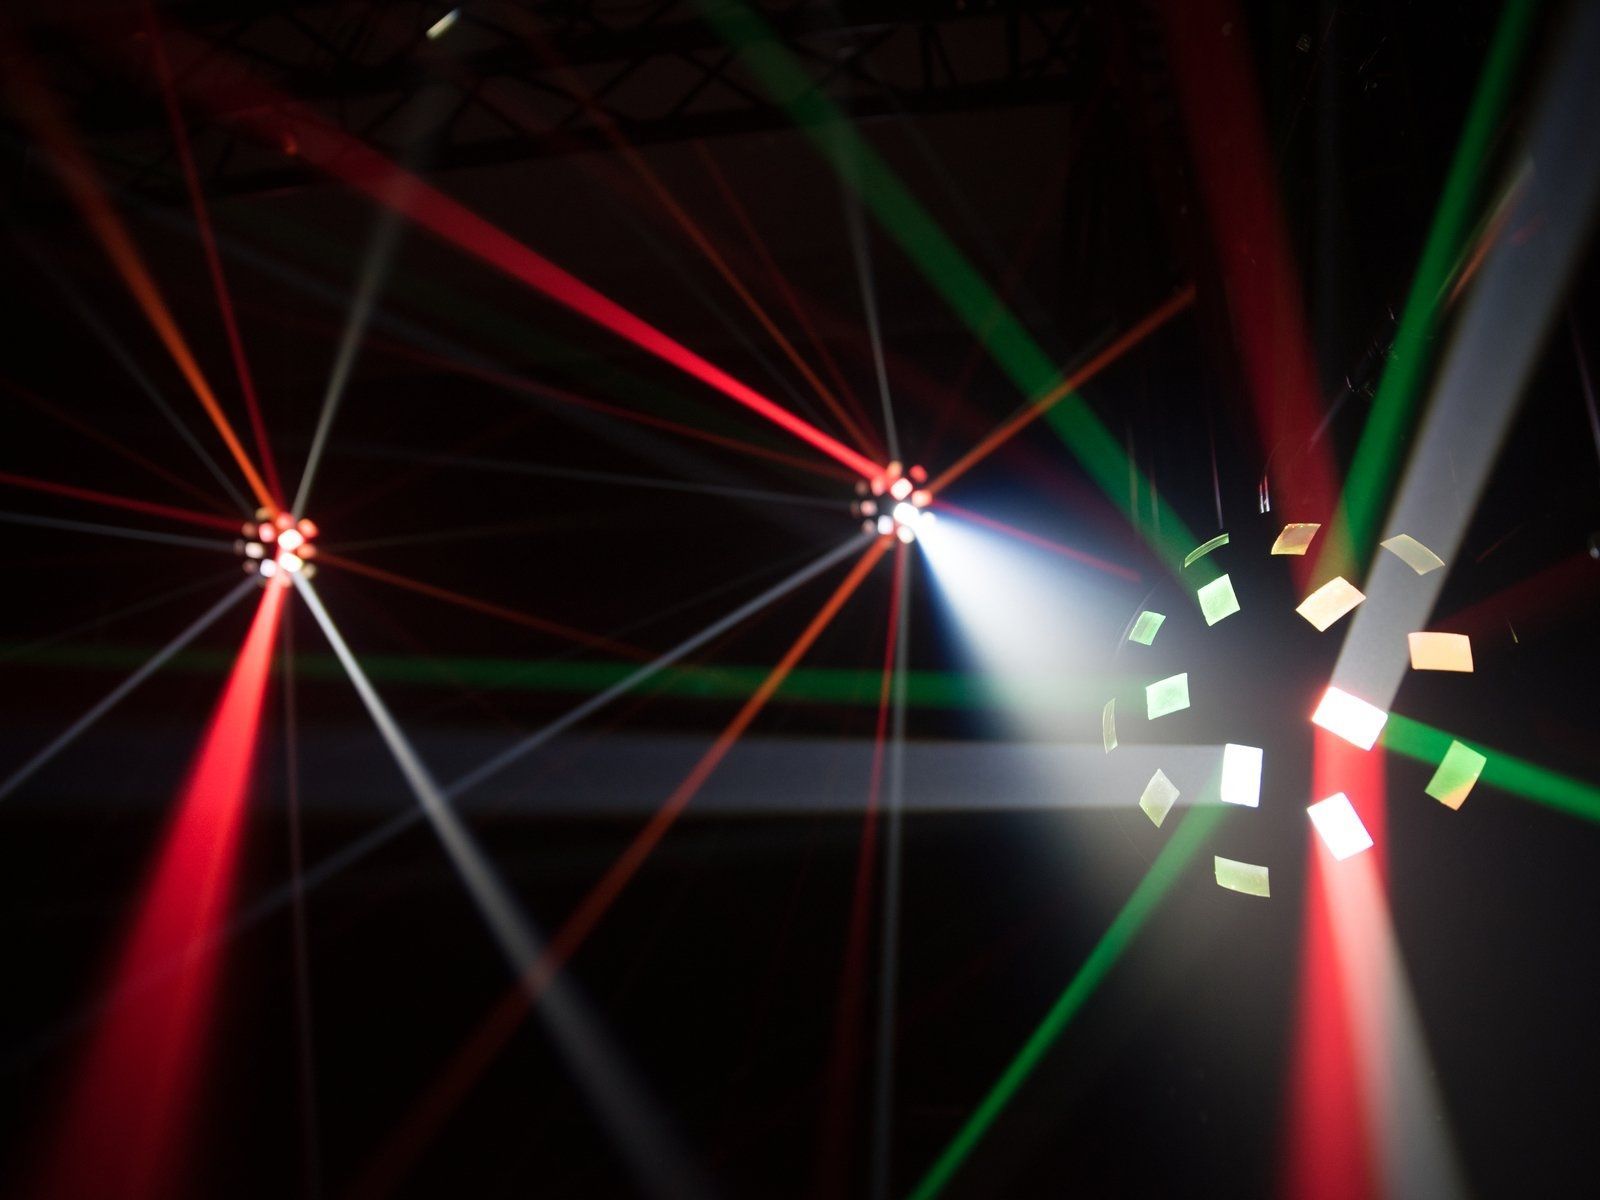 EUROLITE LED Z-2000 Strahlen Lichteffekt mit DMX, Auto- und Musikmodus